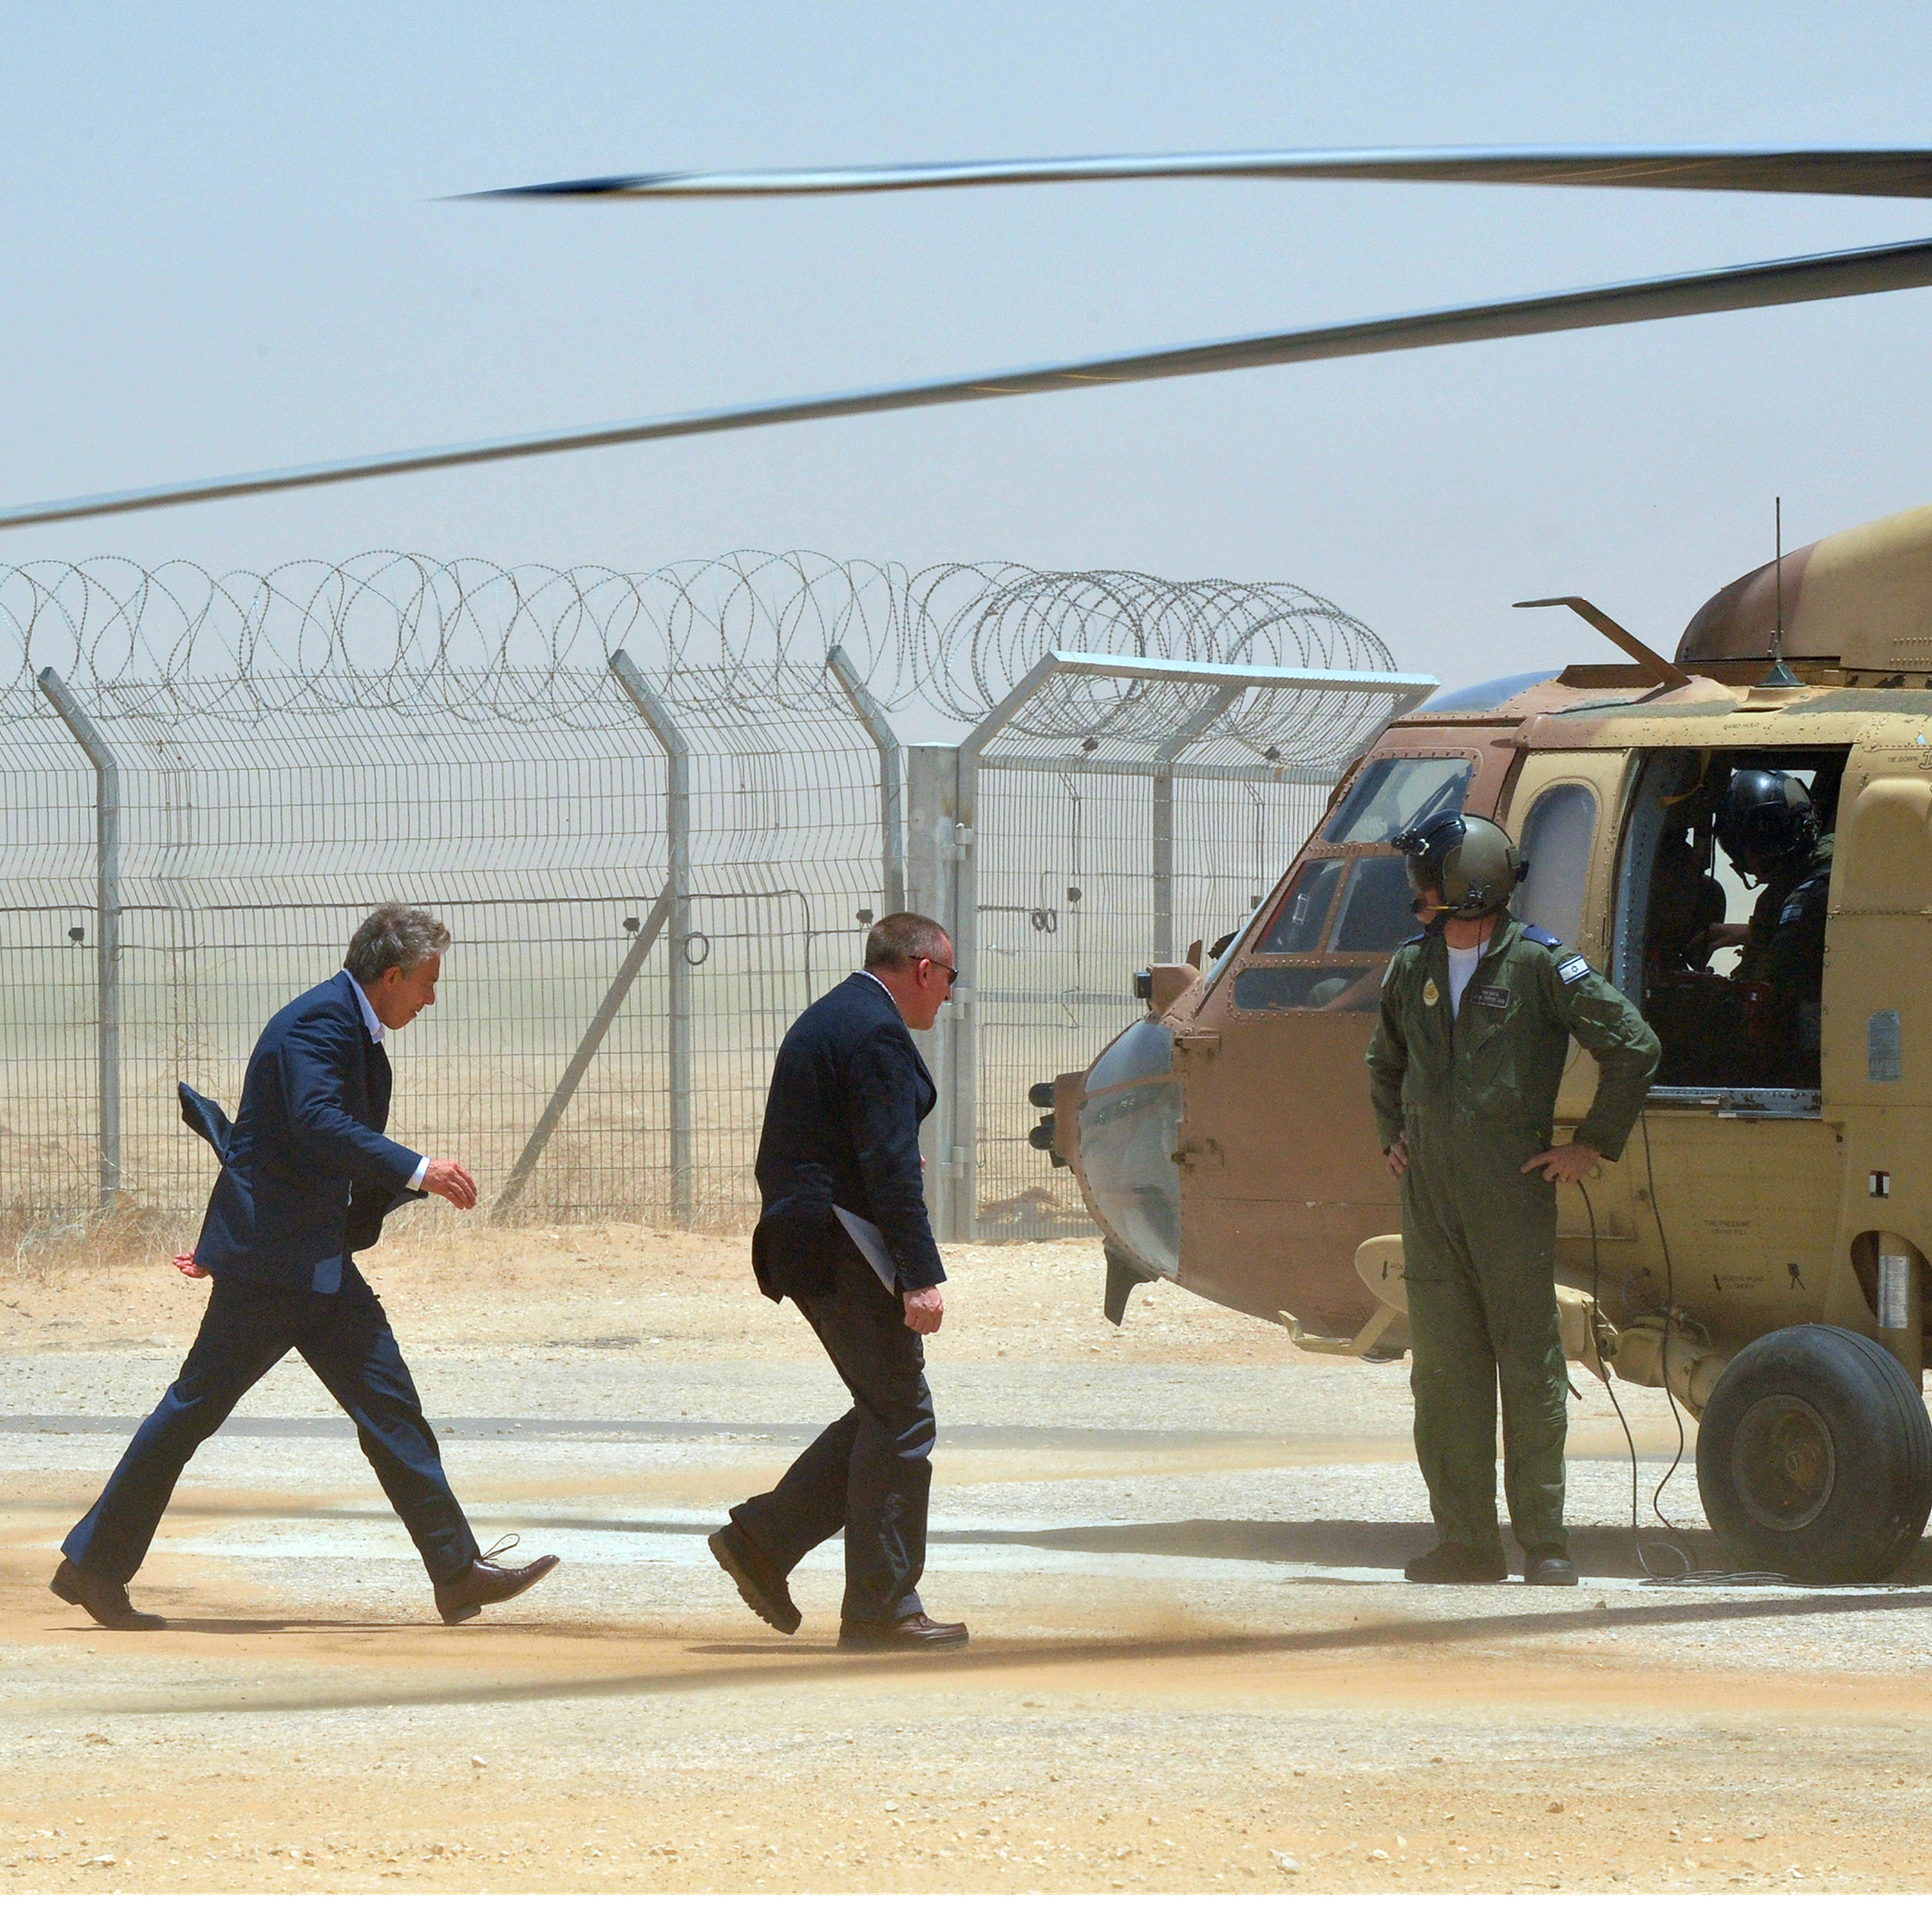 Tony Blair & the Iraq War